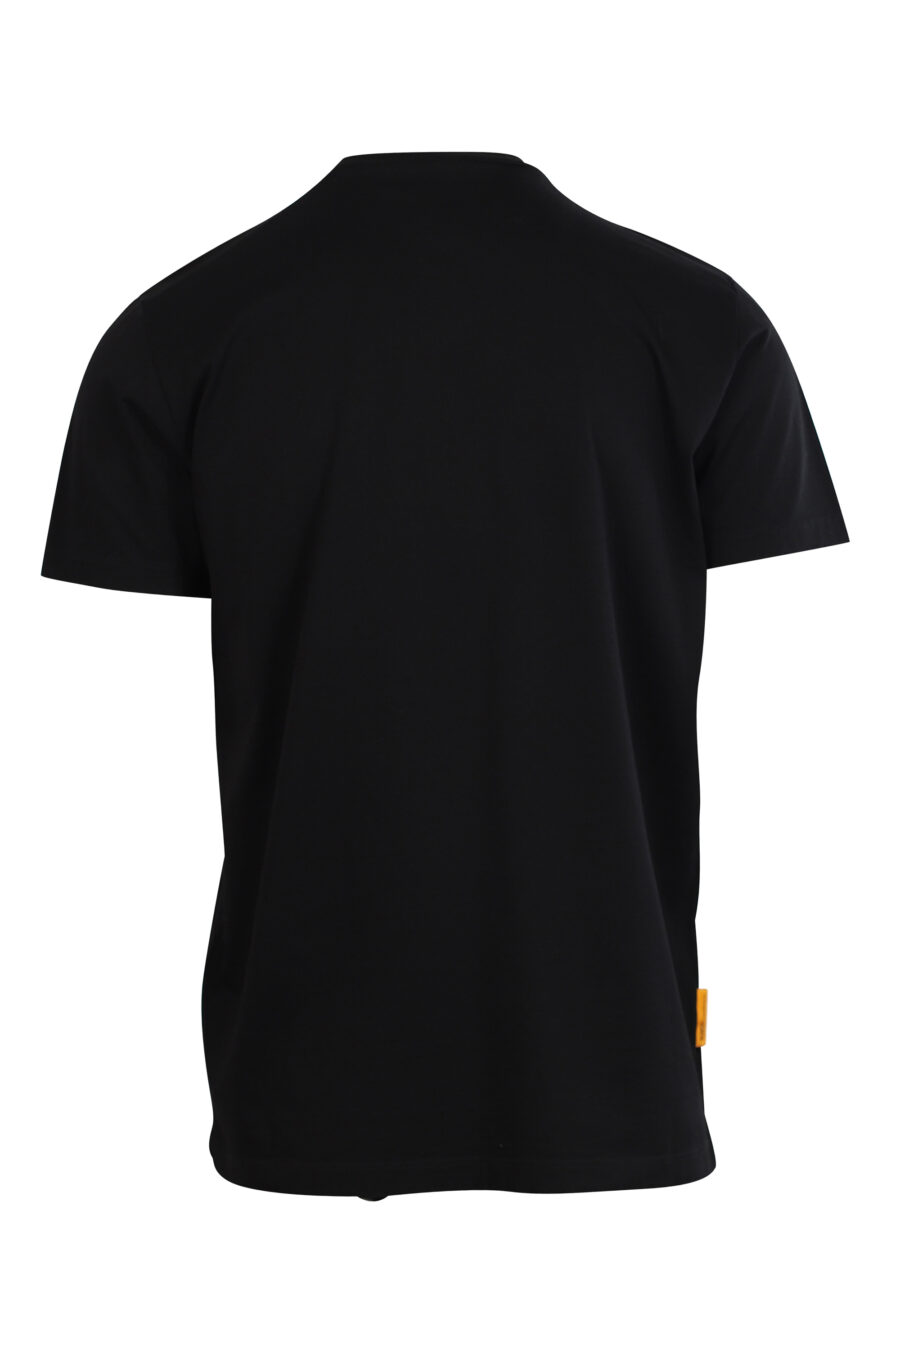 T-shirt preta com maxilogo "pac-man" - 8054148177485 2